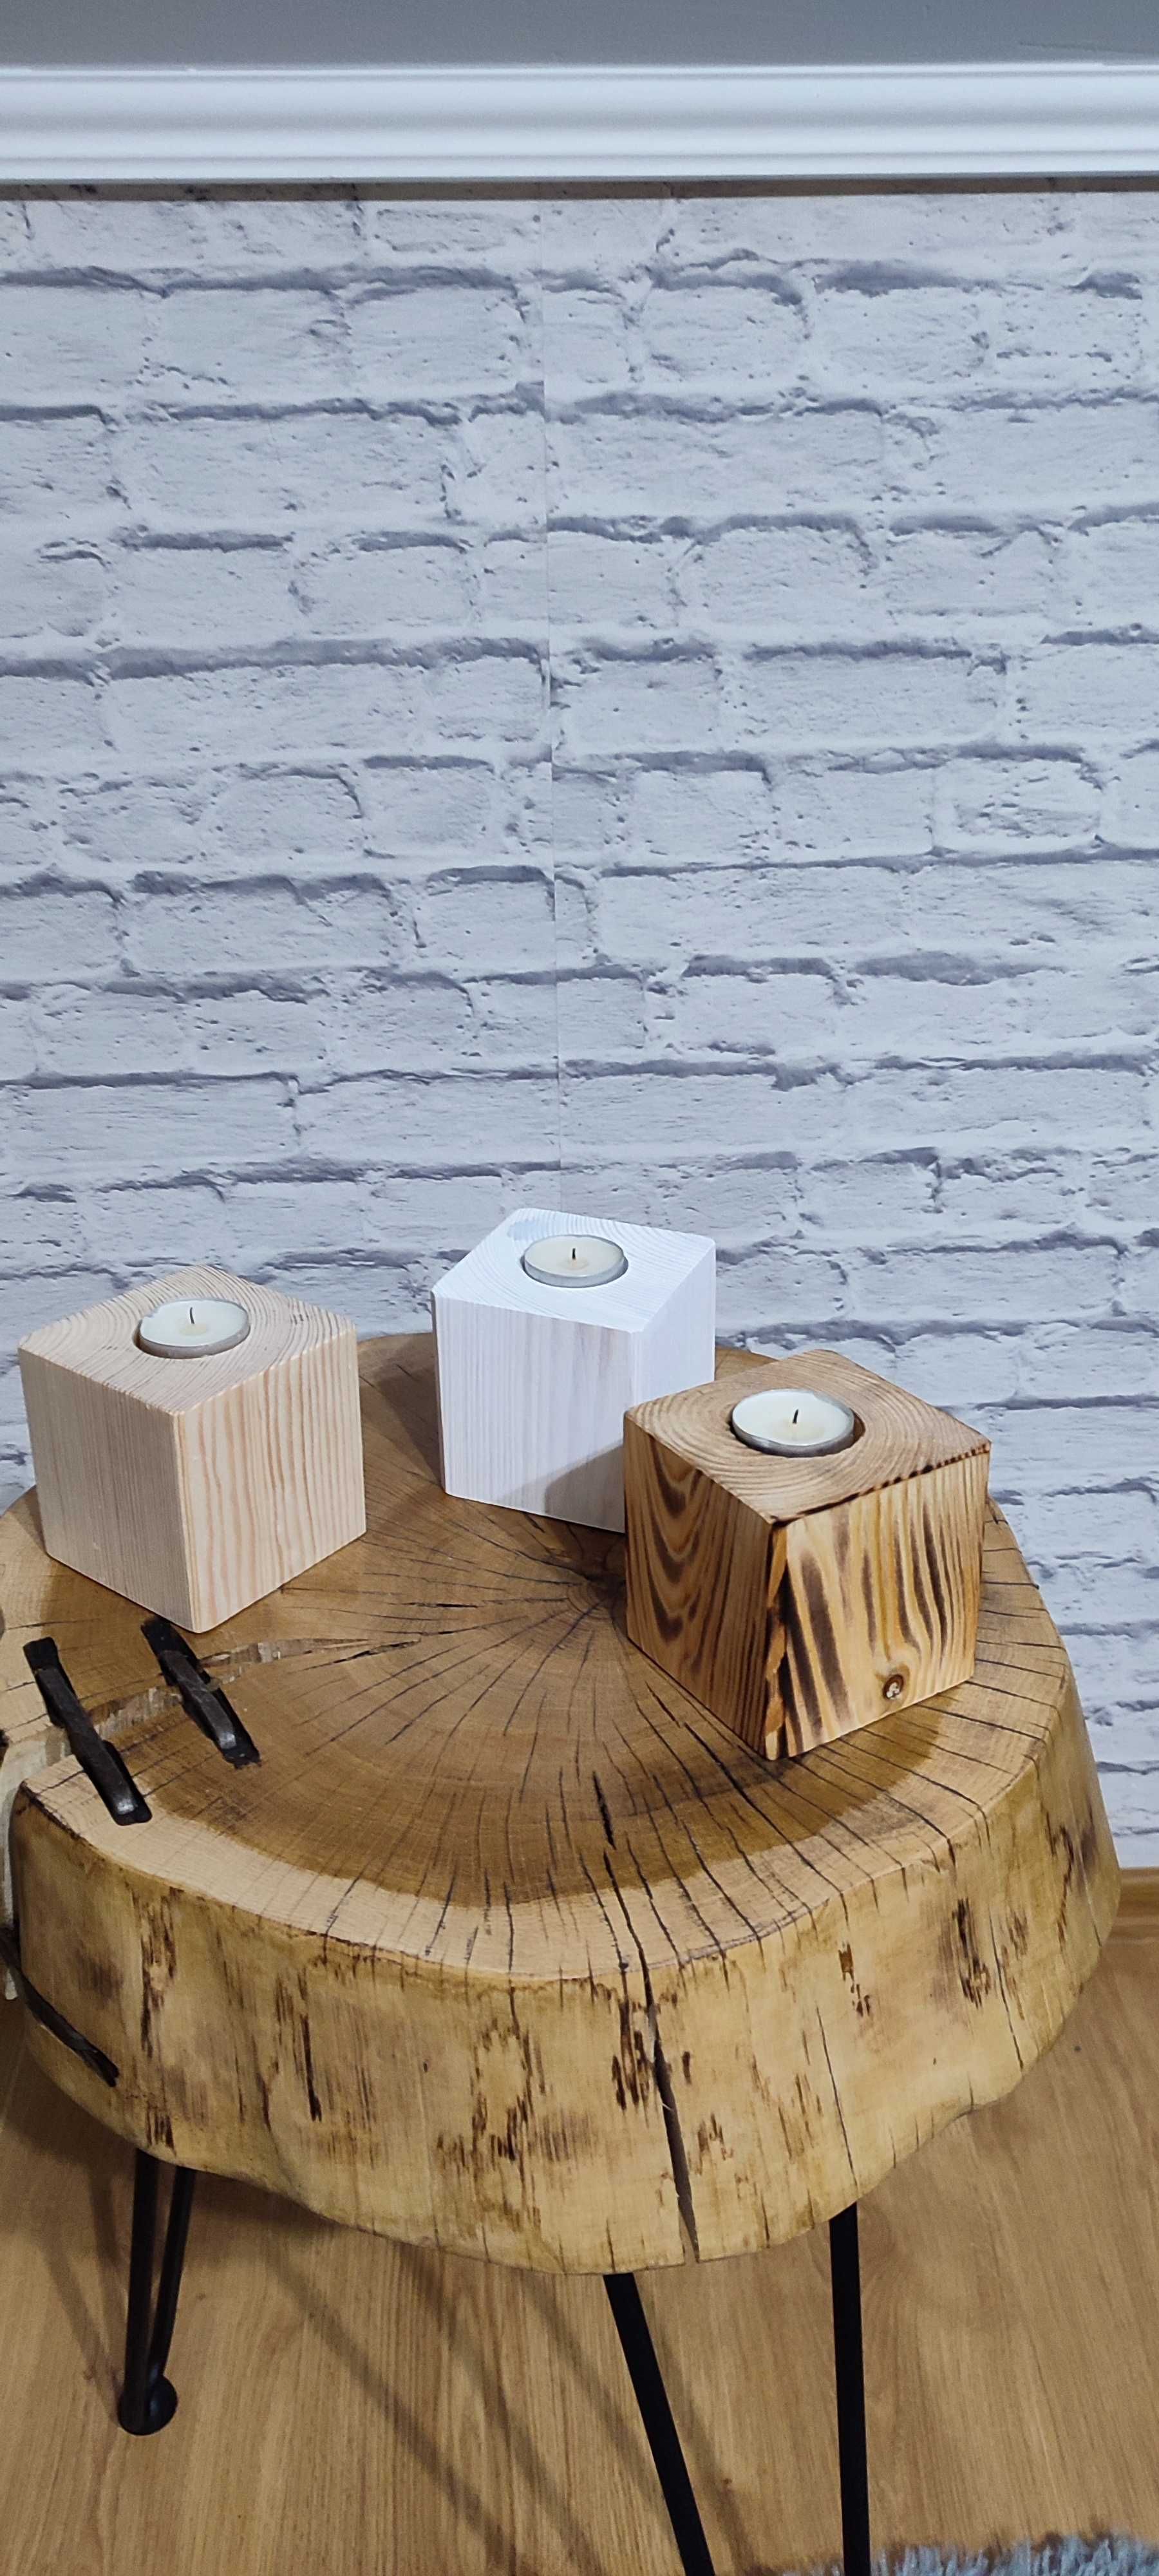 Świeczniki drewniane kwadratowe komplet 3 sztuki